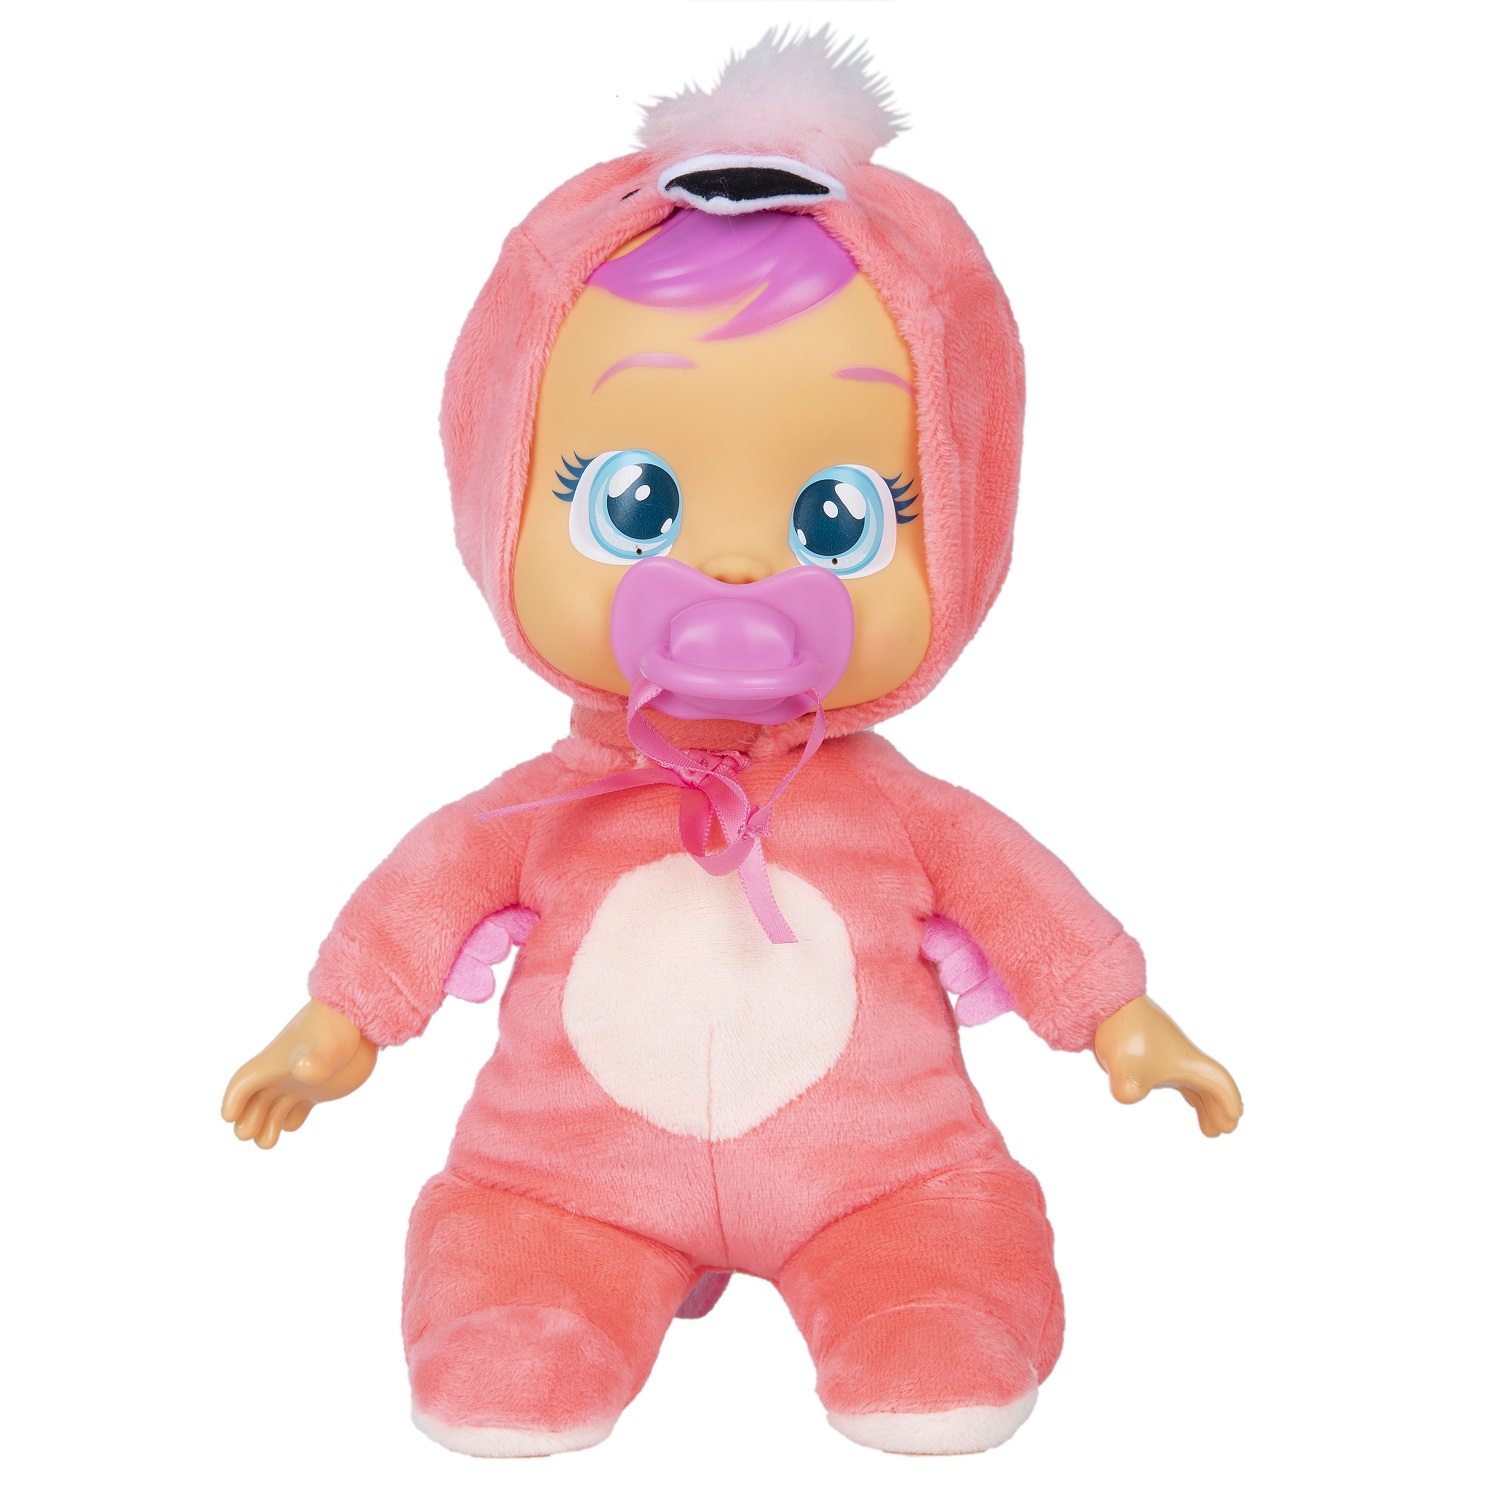 Кукла Cry Babies Край Бебис Фэнси Малышка интерактивная плачущая 41037 кукла интерактивная cry babies dressy леди